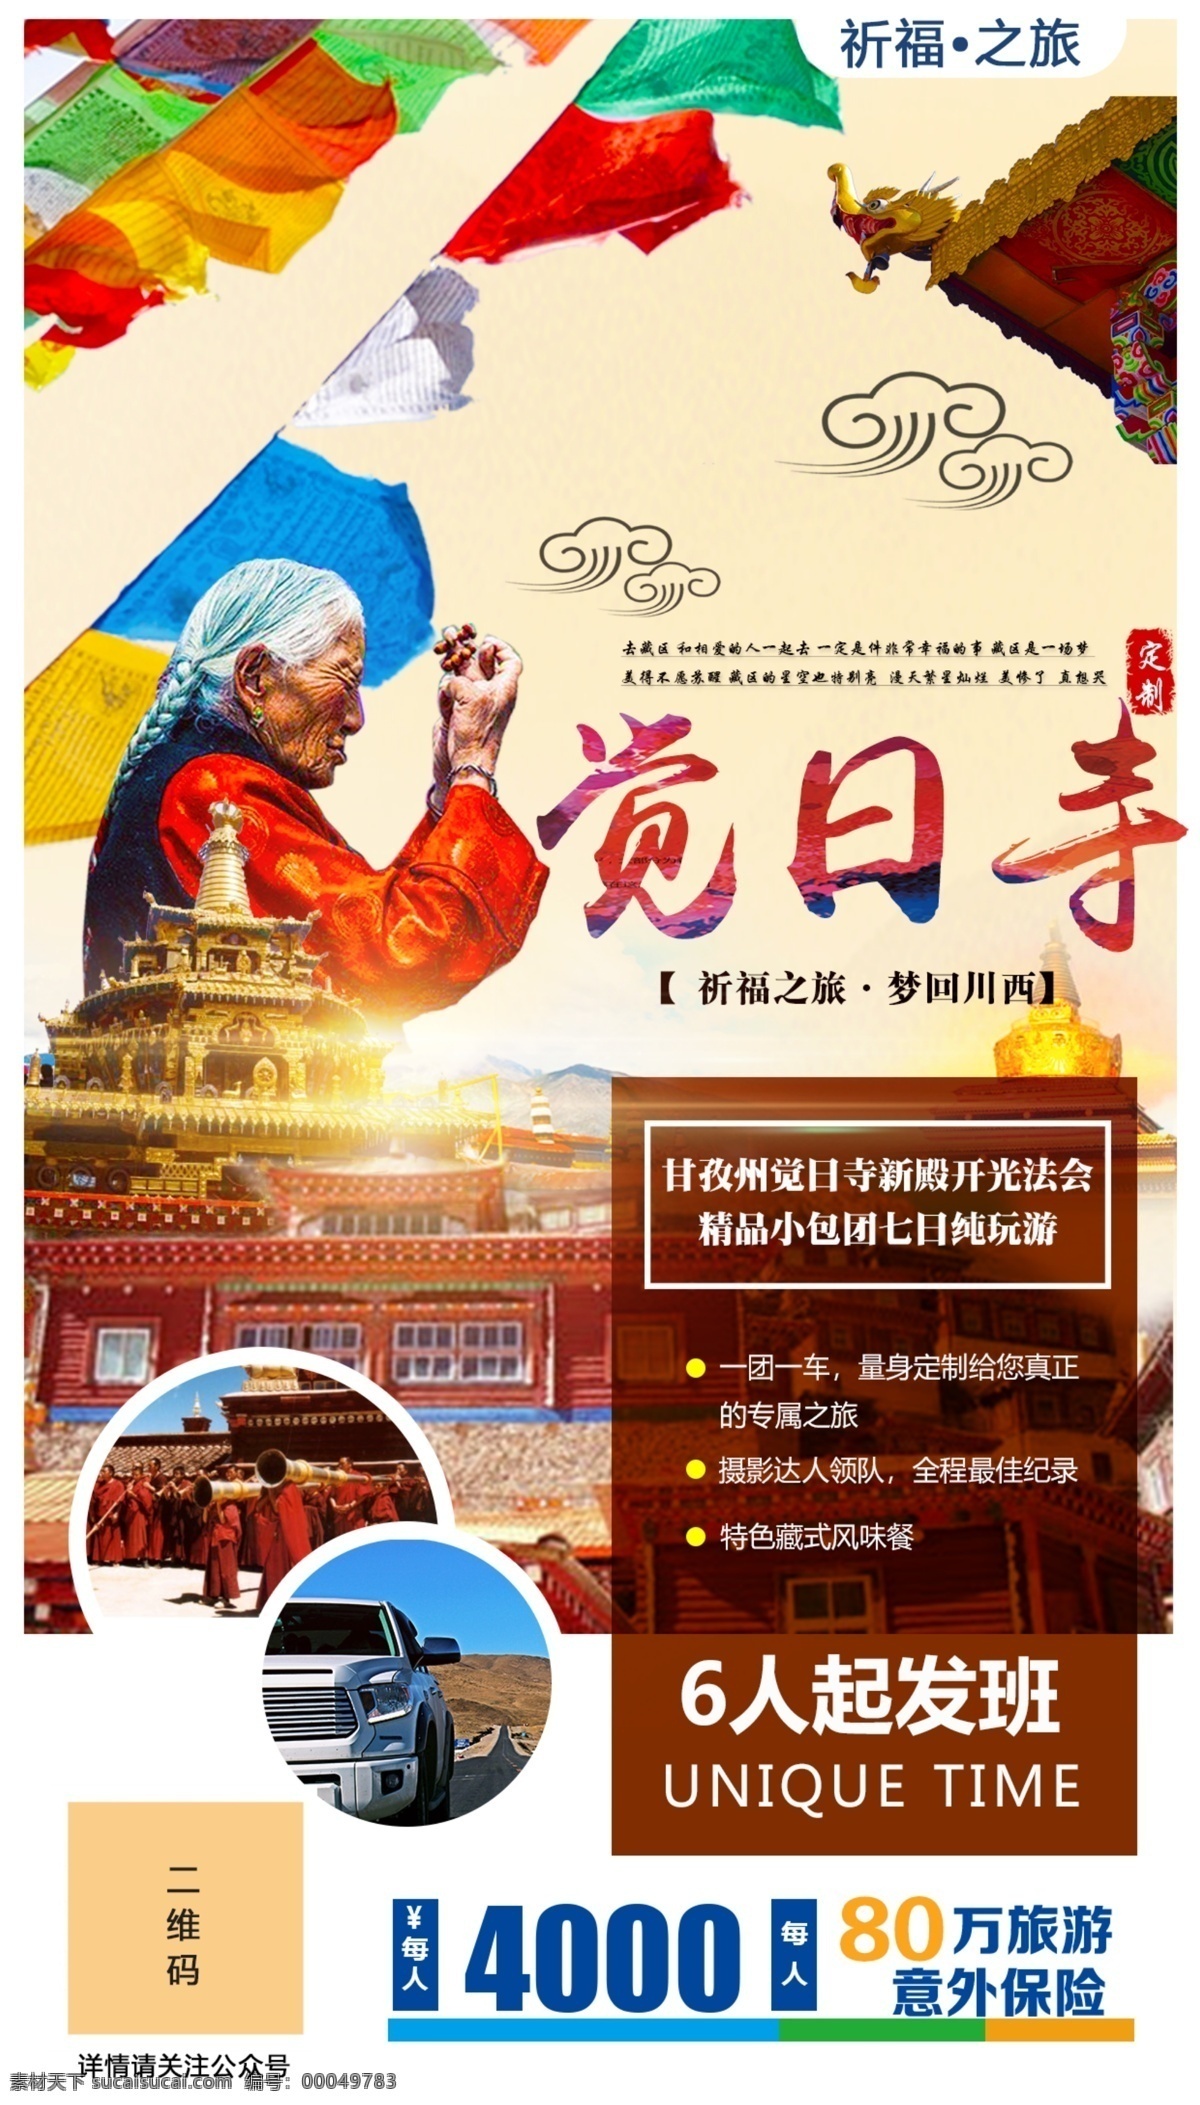 西藏旅游海报 西藏 旅游 虔诚 海报 自驾